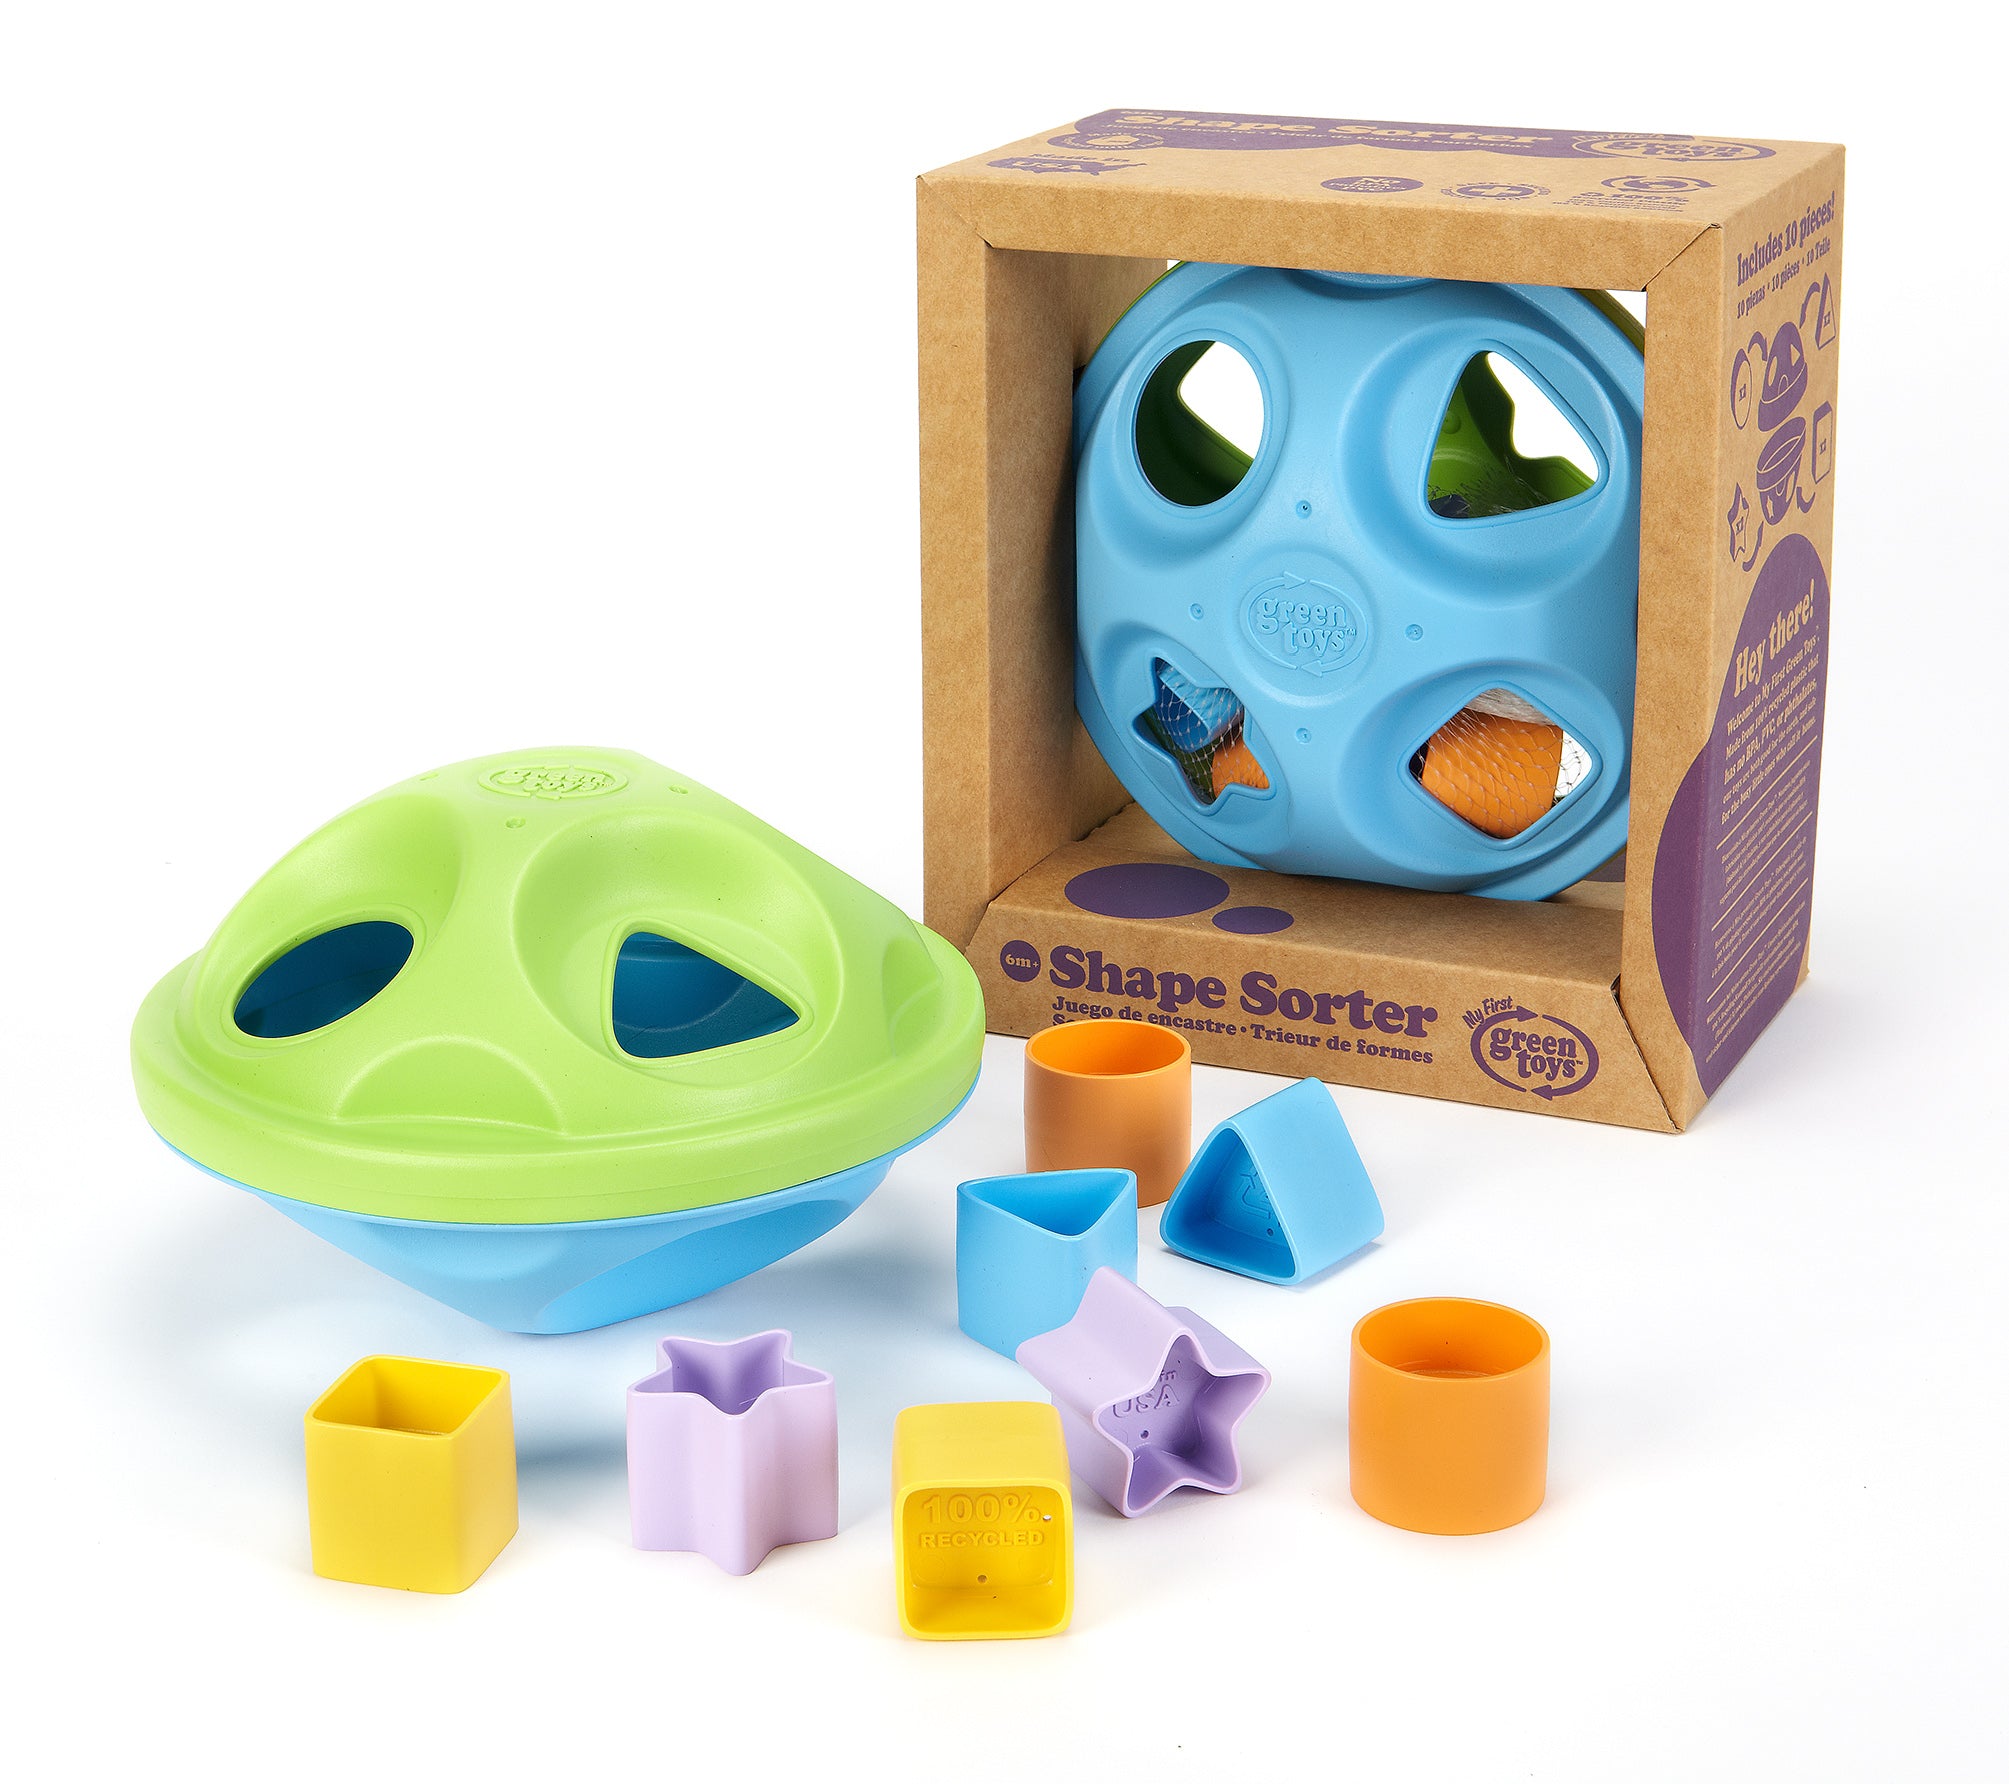 Shape Sorter – Green Toys eCommerce